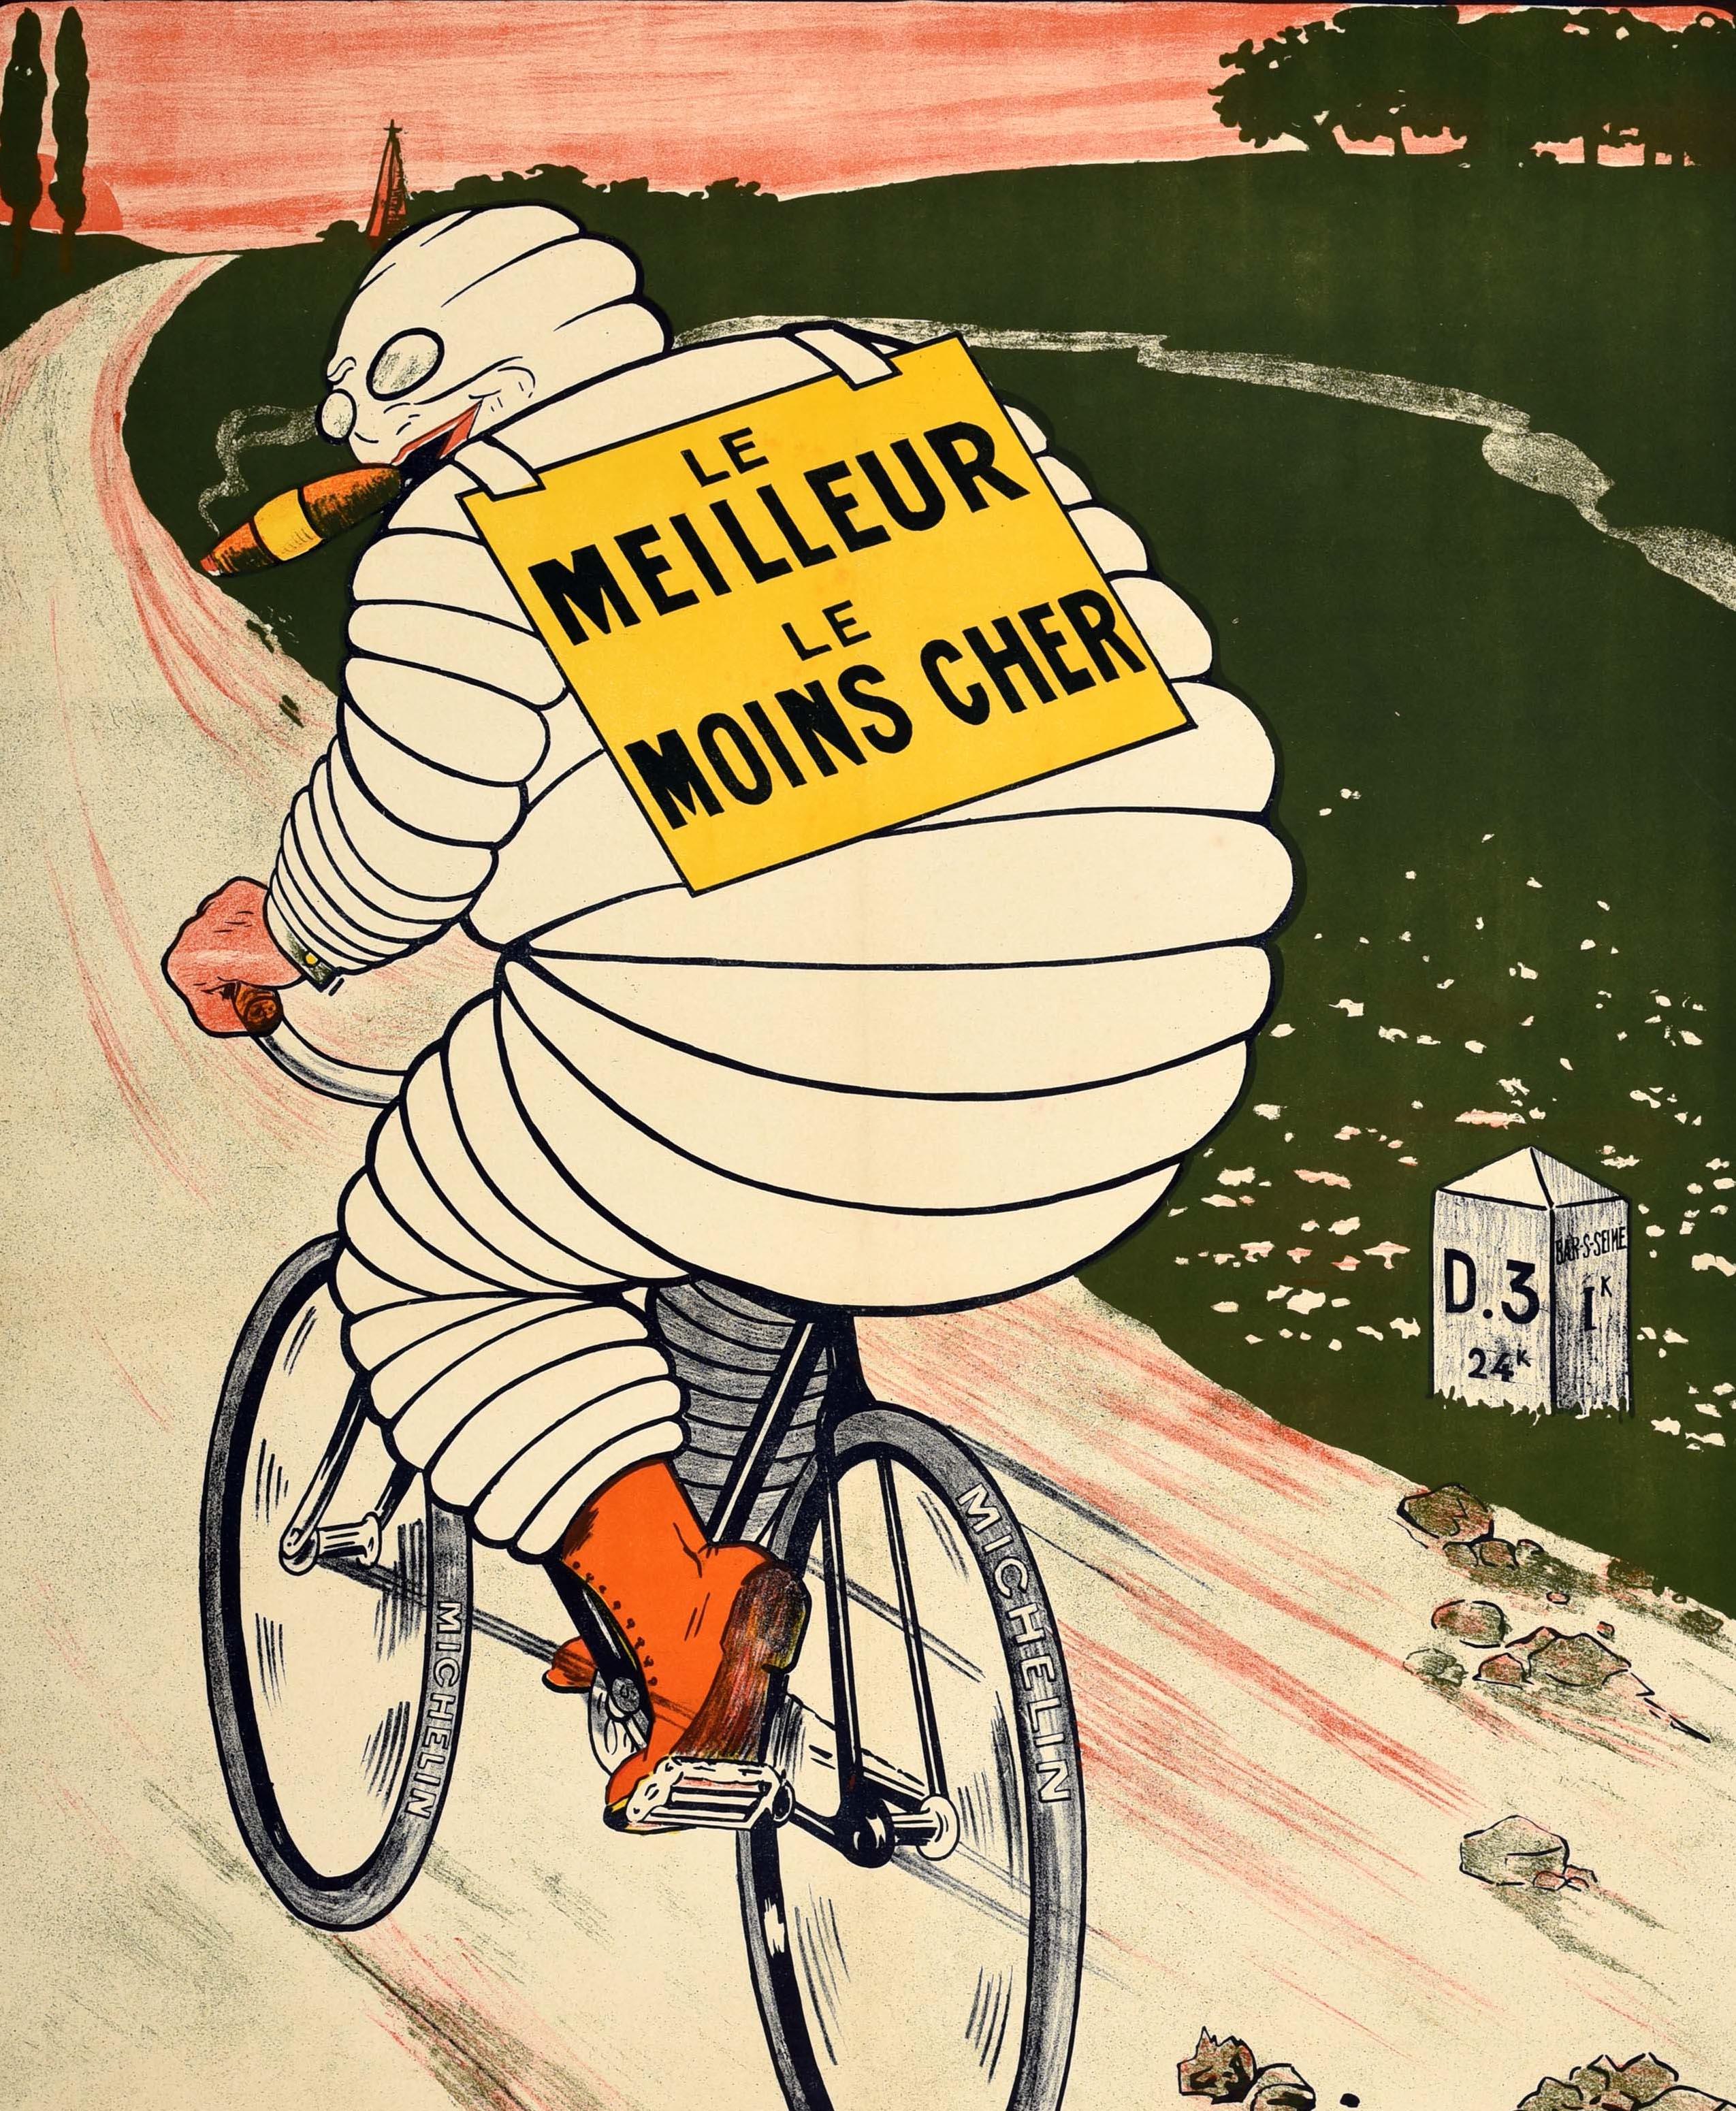 Ancienne affiche publicitaire originale pour les pneus Michelin comportant une superbe illustration montrant le personnage Bibendum - l'emblématique Bibendum fabriqué à partir de pneus - fumant un cigare et roulant à bicyclette sur une route de